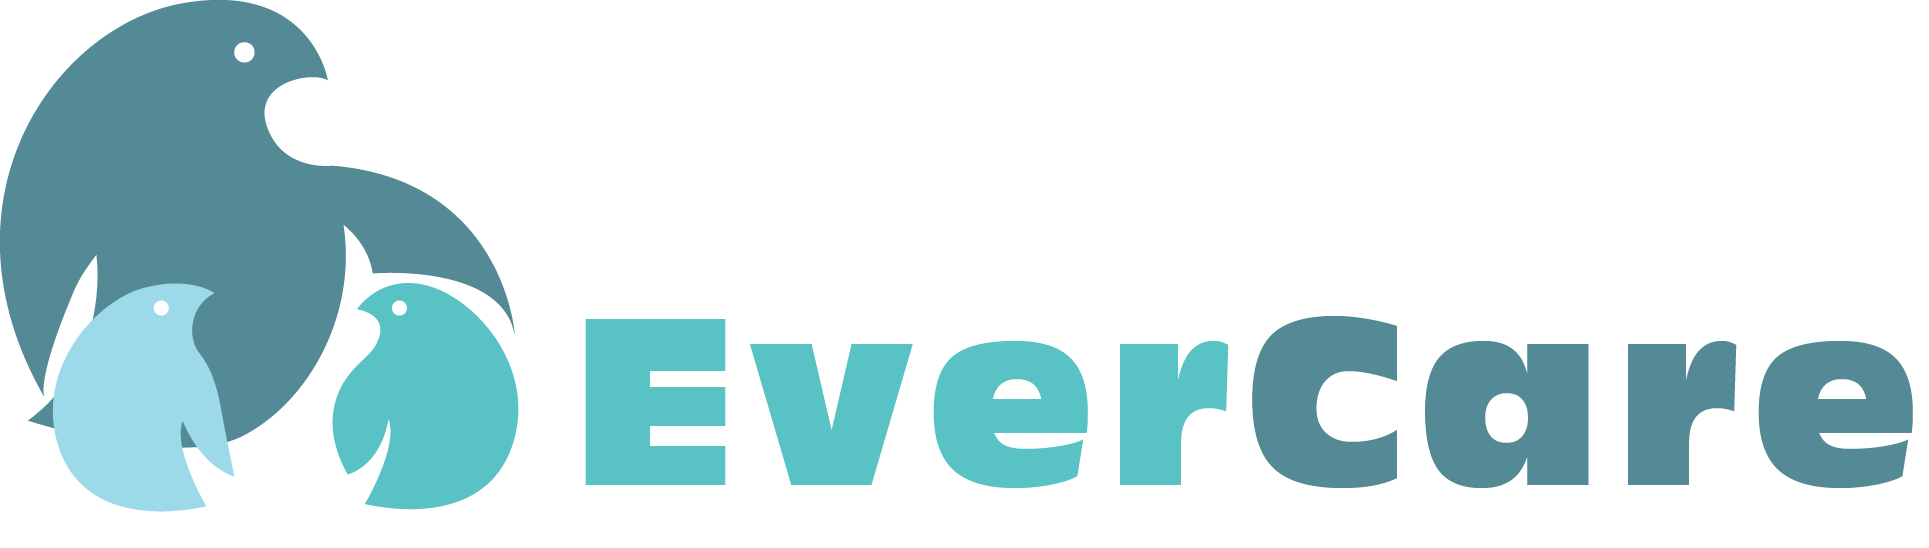 Evercare.ru — информационно-аналитический образовательный проект